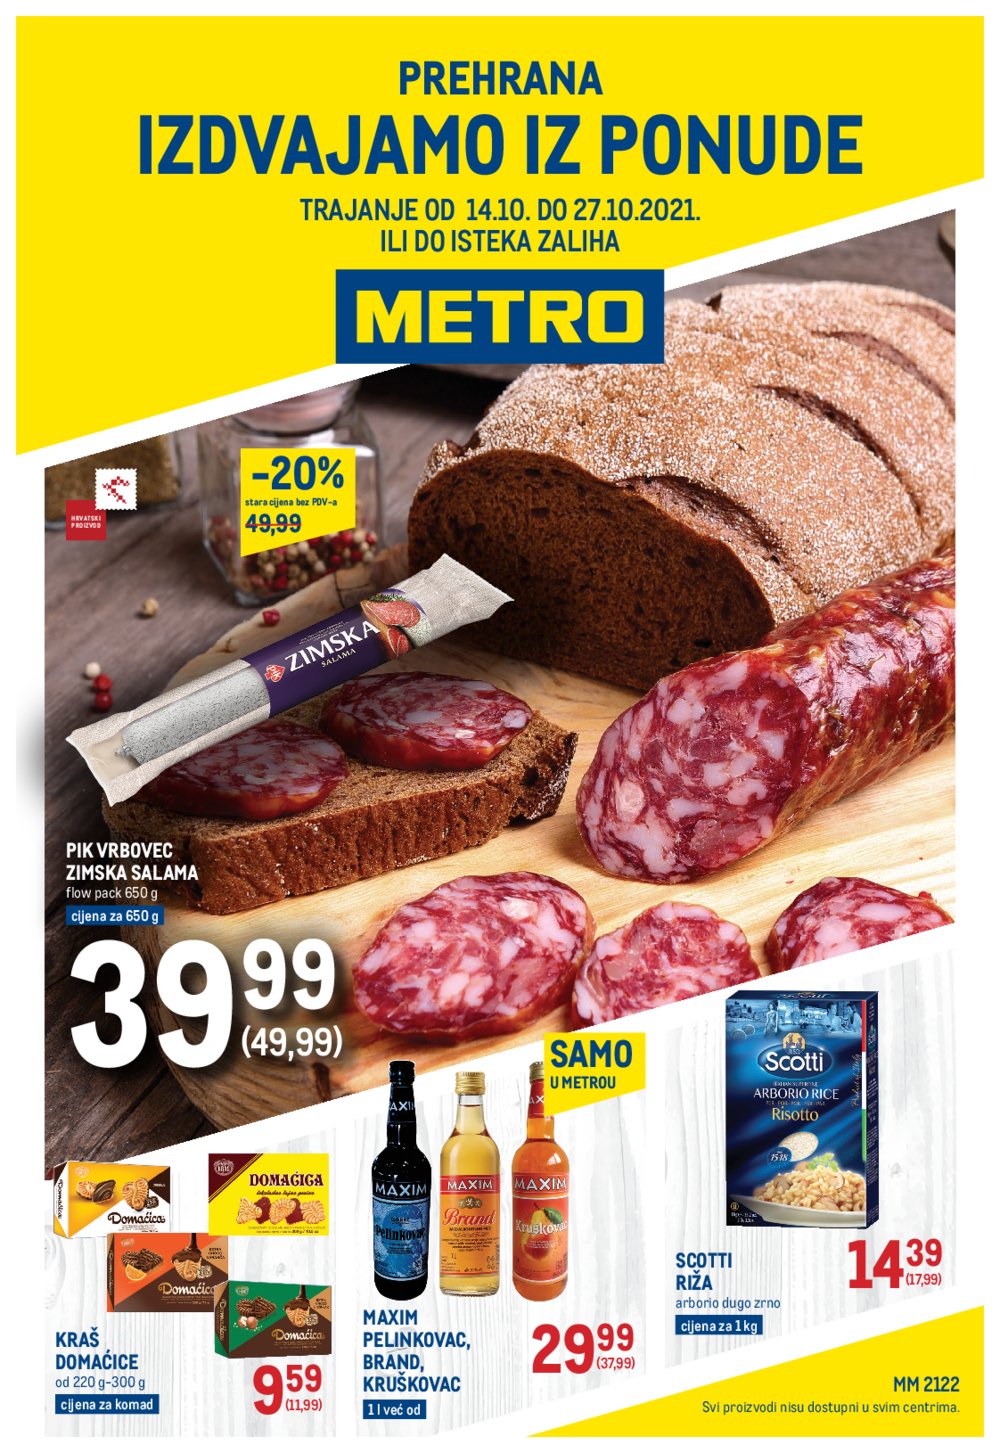 Metro katalog Prehrana 14.10.-27.10.2021.